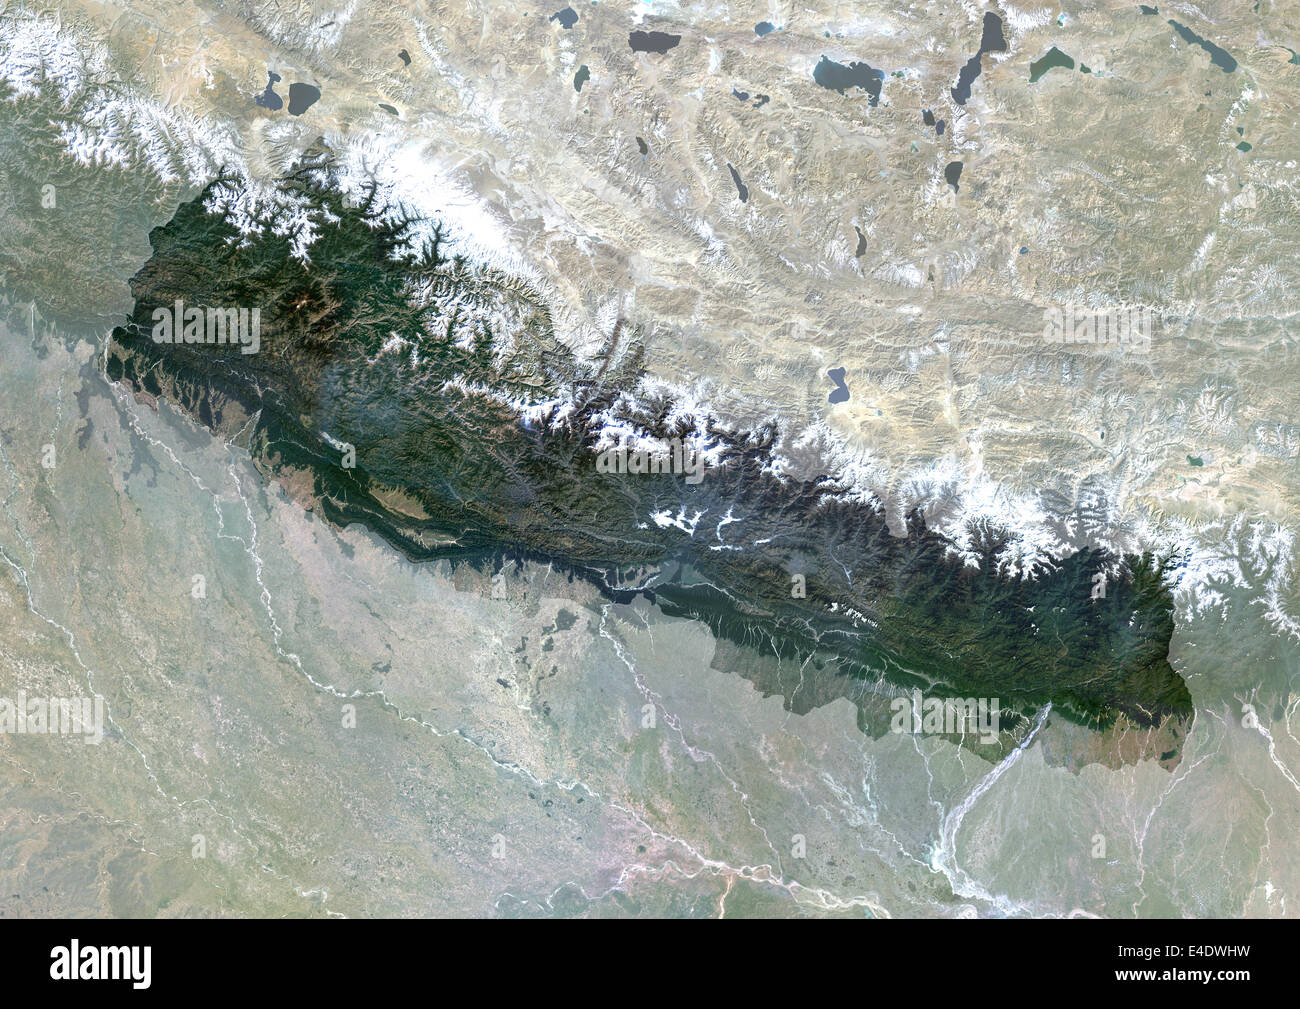 Il Nepal, Asia, True Color satellitare immagine con maschera. Vista satellitare del Nepal (con maschera). Questa immagine è stata elaborata sulla base dei dati acqui Foto Stock